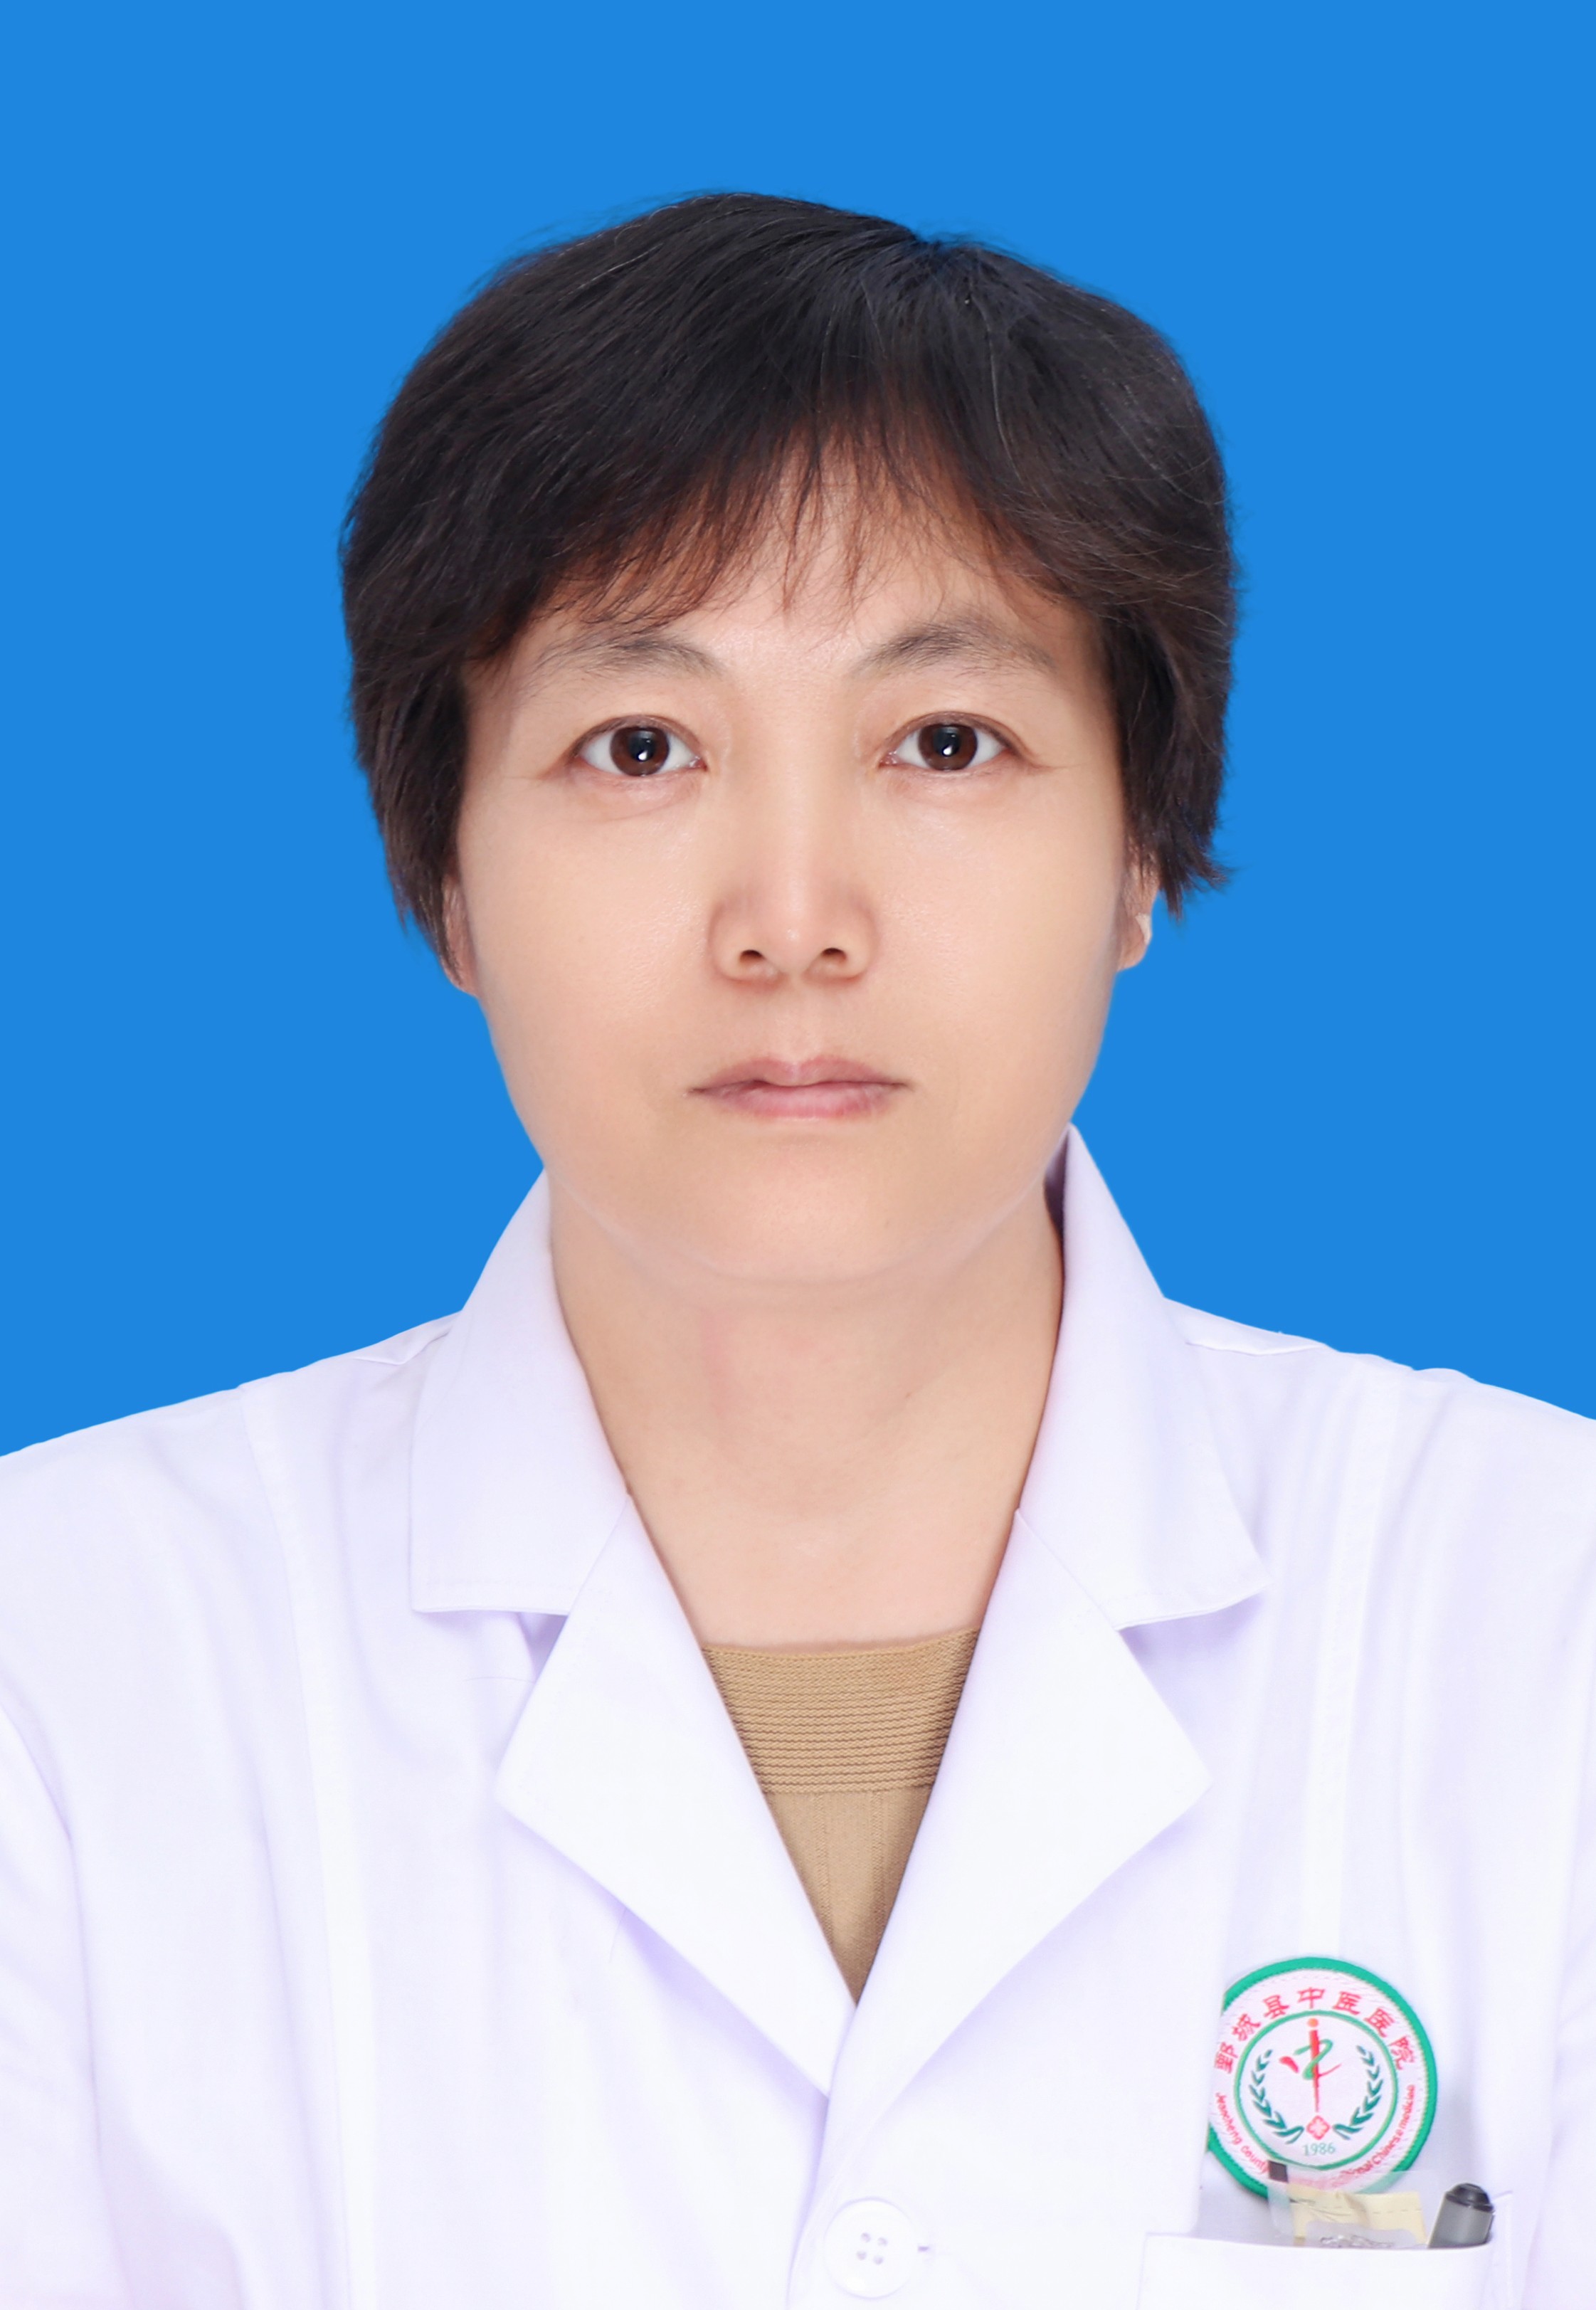 刘彩云、针灸二科副主任、副主任医师